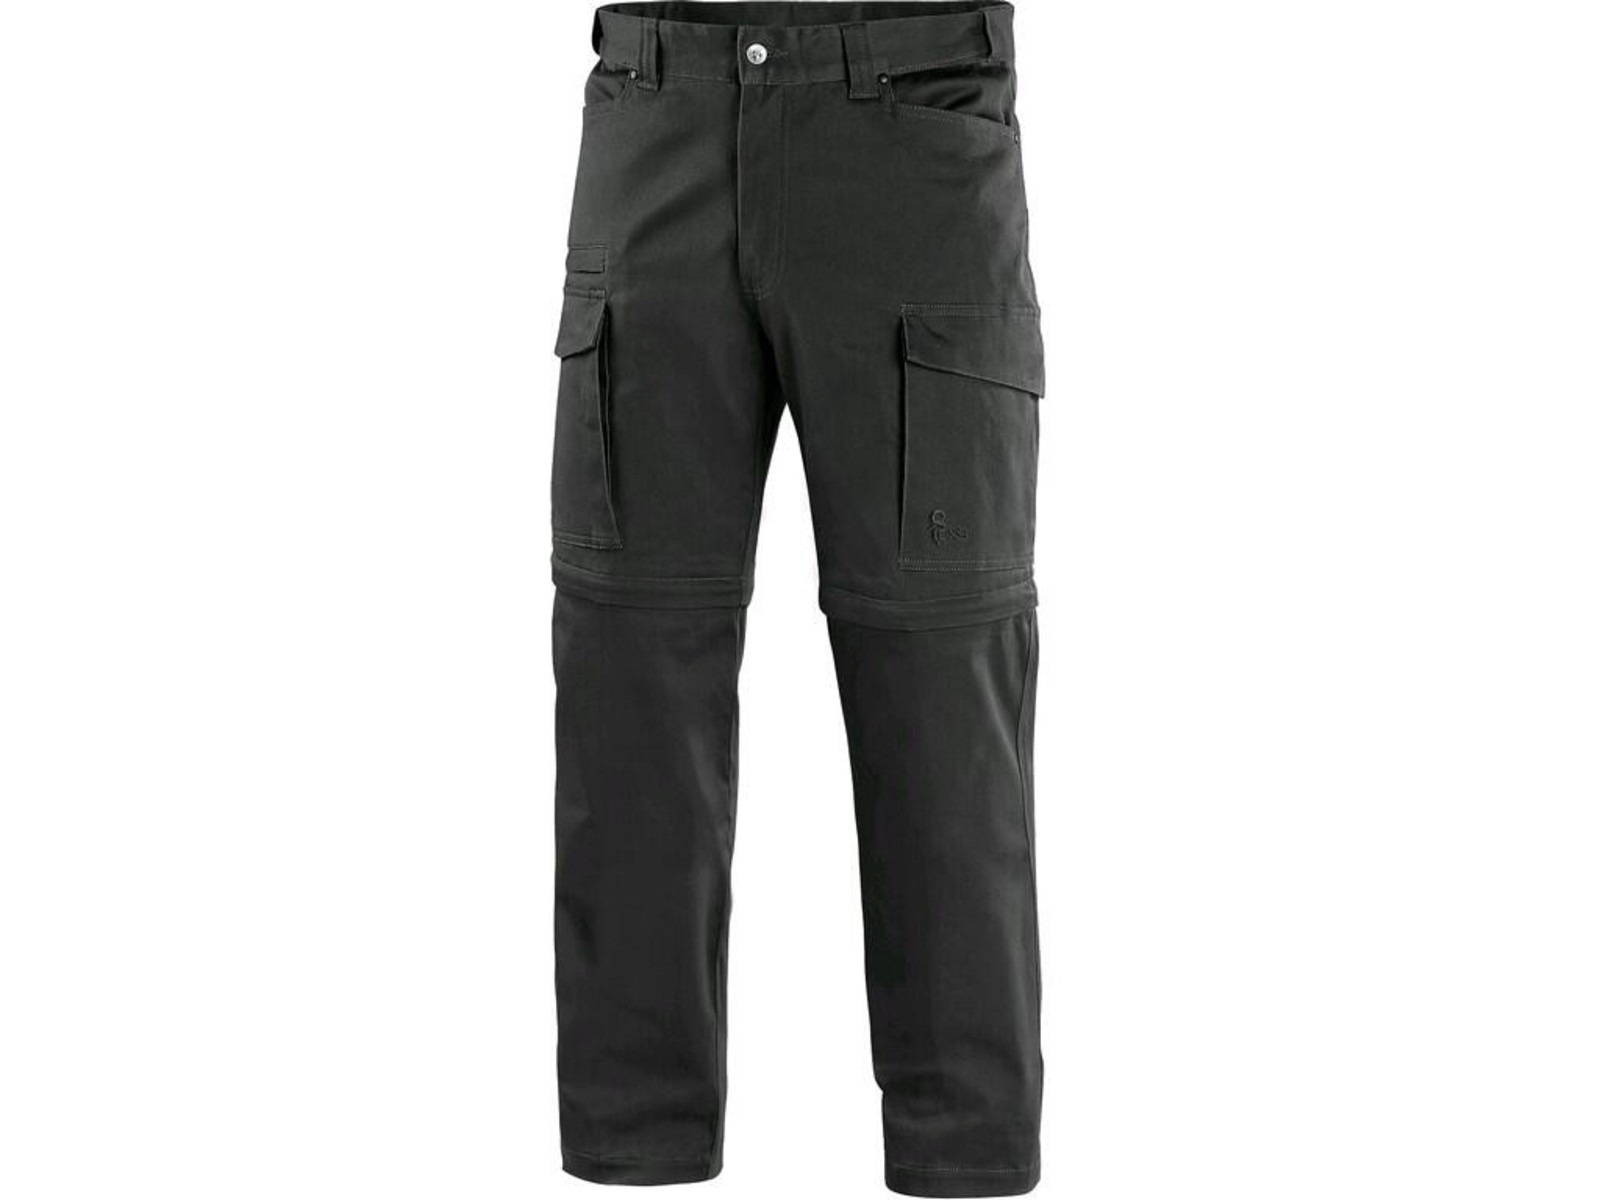 Pánske nohavice CXS Venator 2v1 - veľkosť: 52, farba: čierna